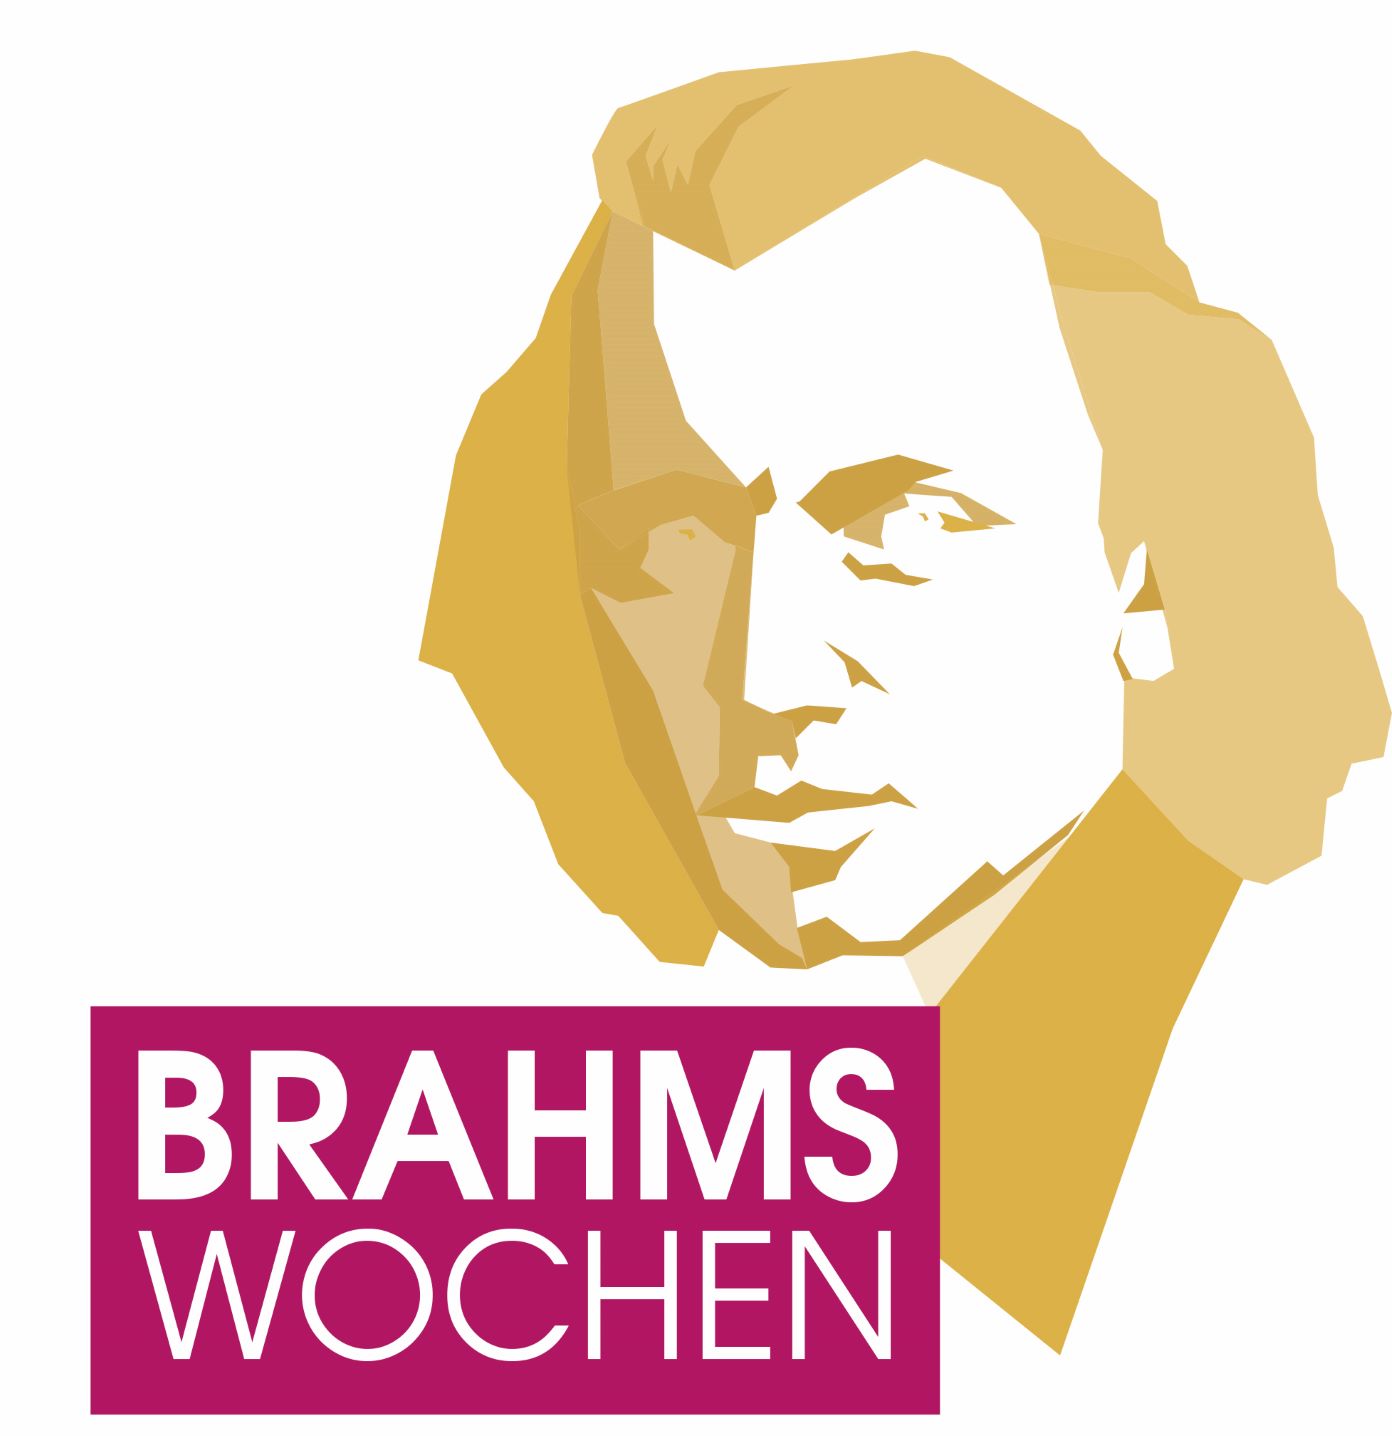 Brahms-Wochen 2020 abgesagt